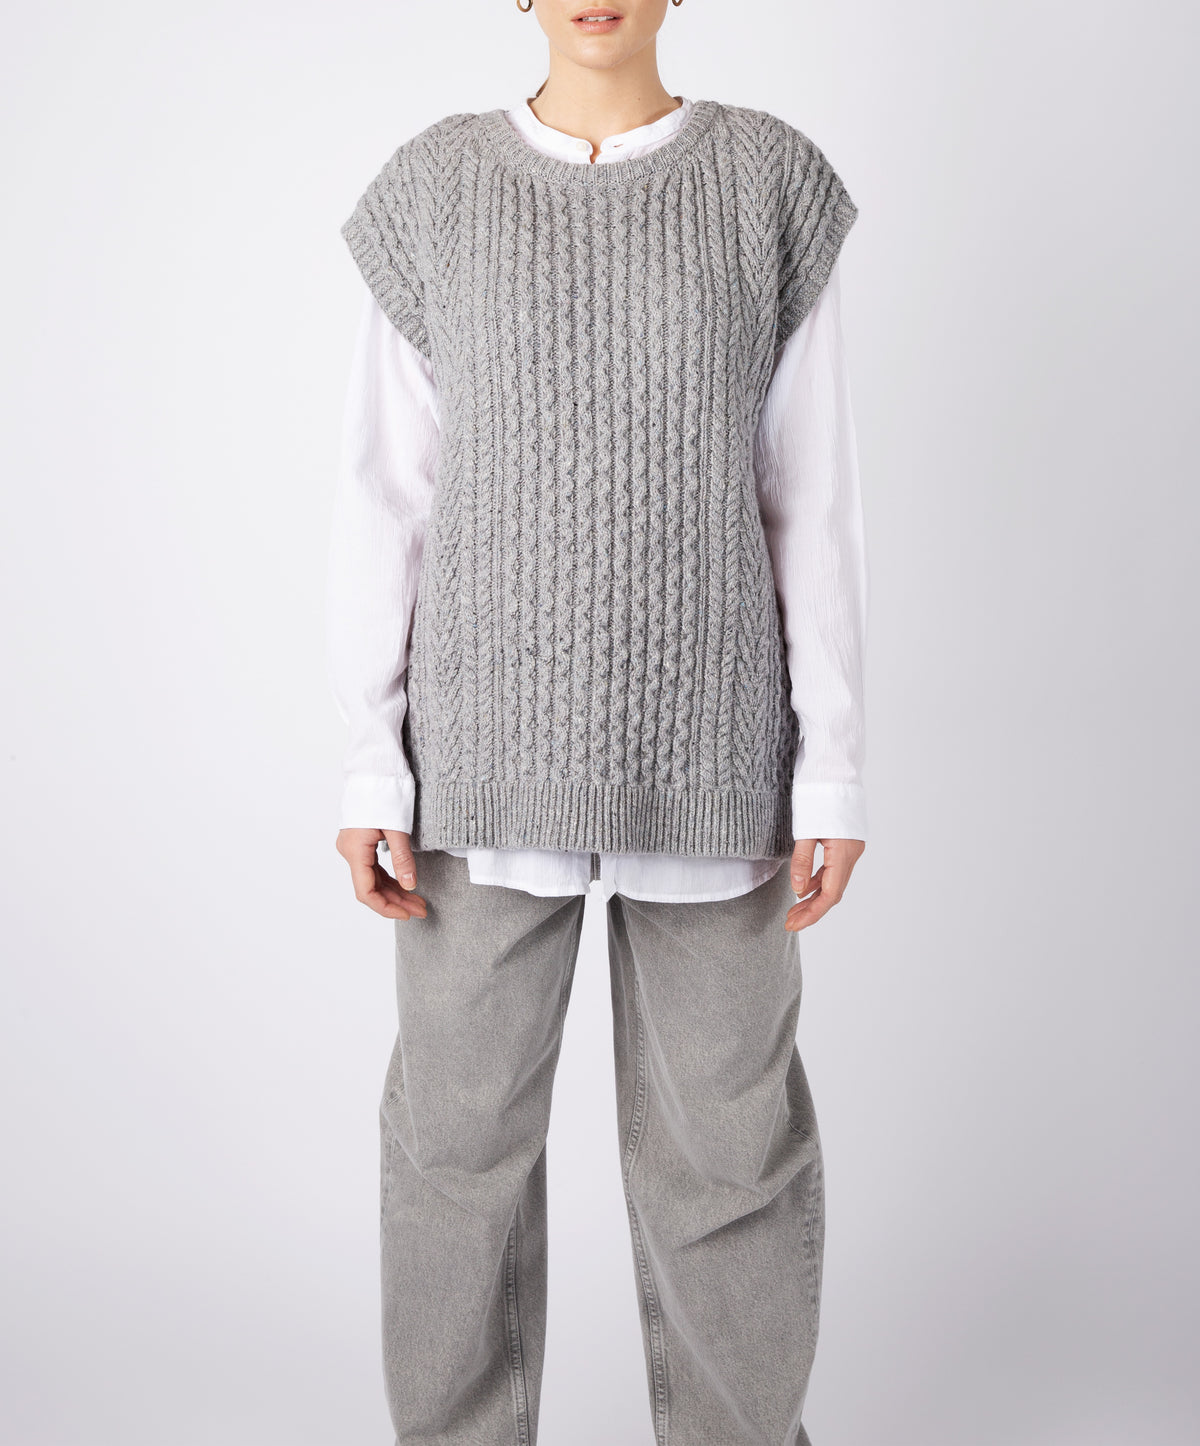 IrelandsEye Knitwear Women's Knitted 'Fennel' Oversized Aran Sweater Vest Pearl Grey